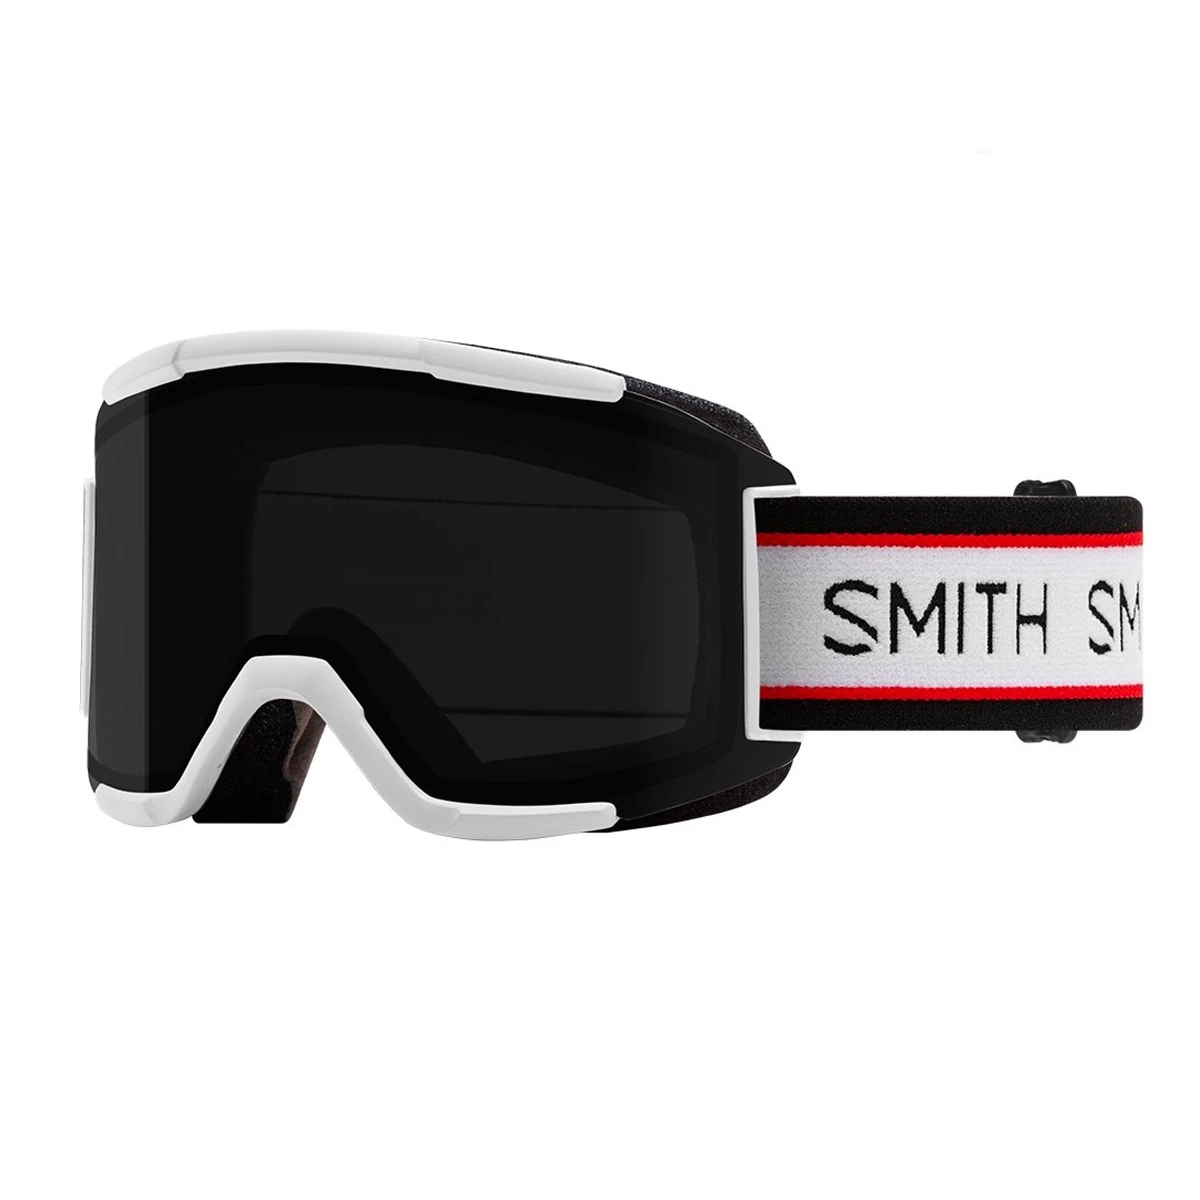 Gezicht omhoog De daadwerkelijke Absorberen Smith Squad Goggles Ski Bril van skibrillen